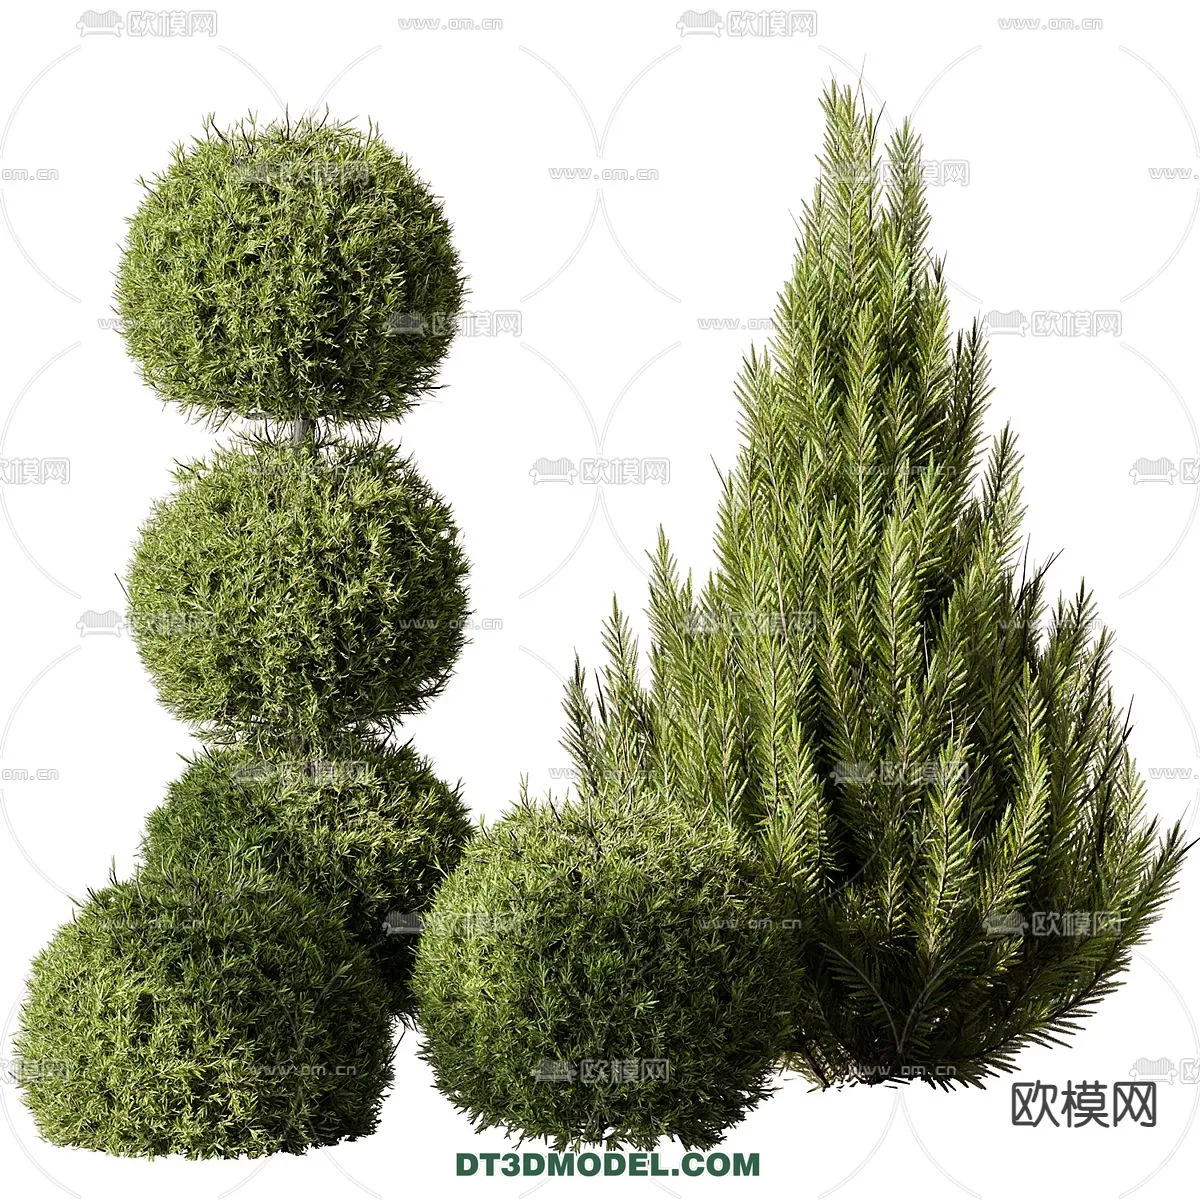 PLANTS – BUSH – CORONA – 3D MODEL – 351